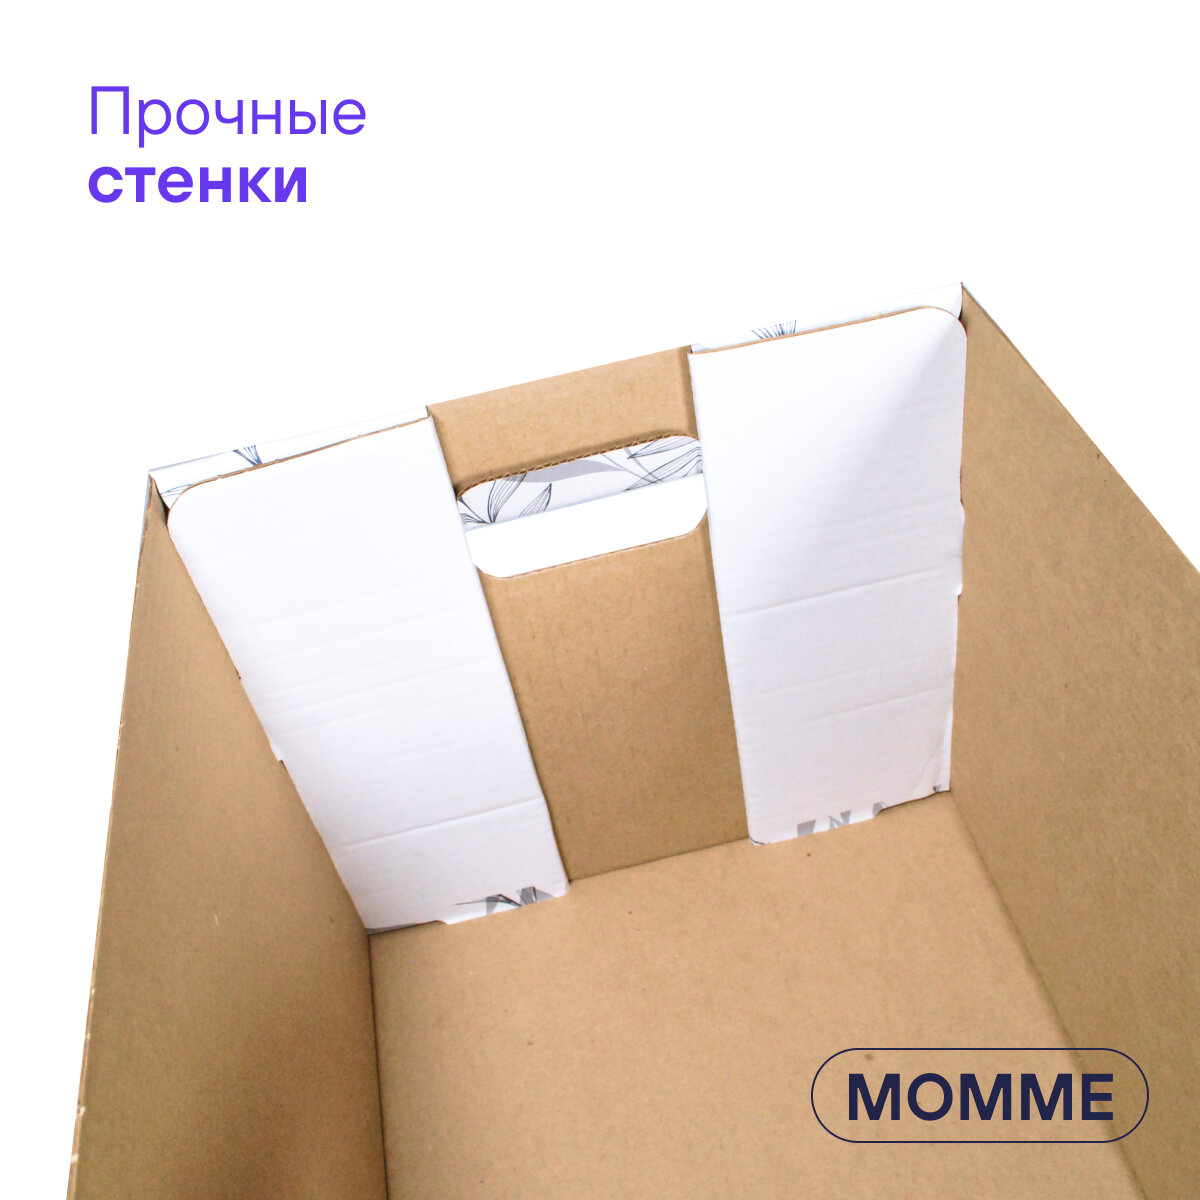 Коробка для хранения вещей и игрушек BOXY момме 38х33х30 см, цвет серый, гофрокартон, в упаковке 4 шт - фотография № 10